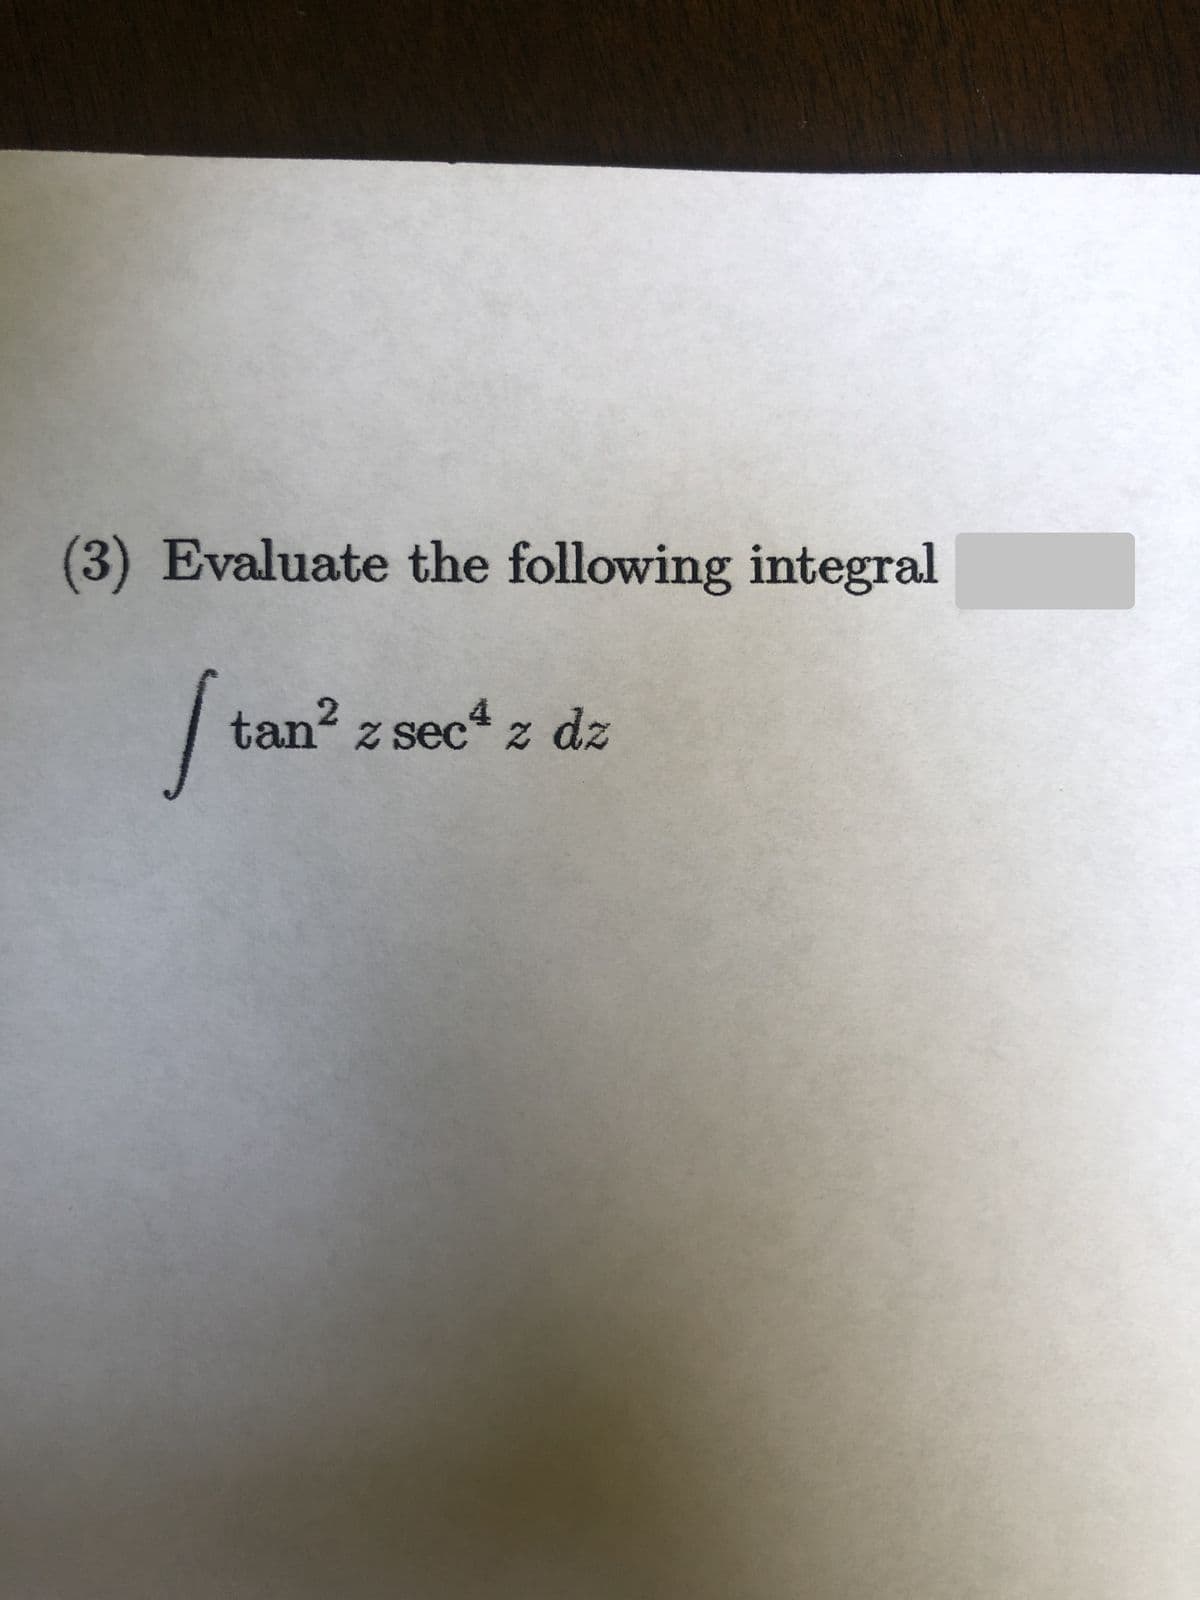 (3) Evaluate the following integral
tan? z sec z dz
